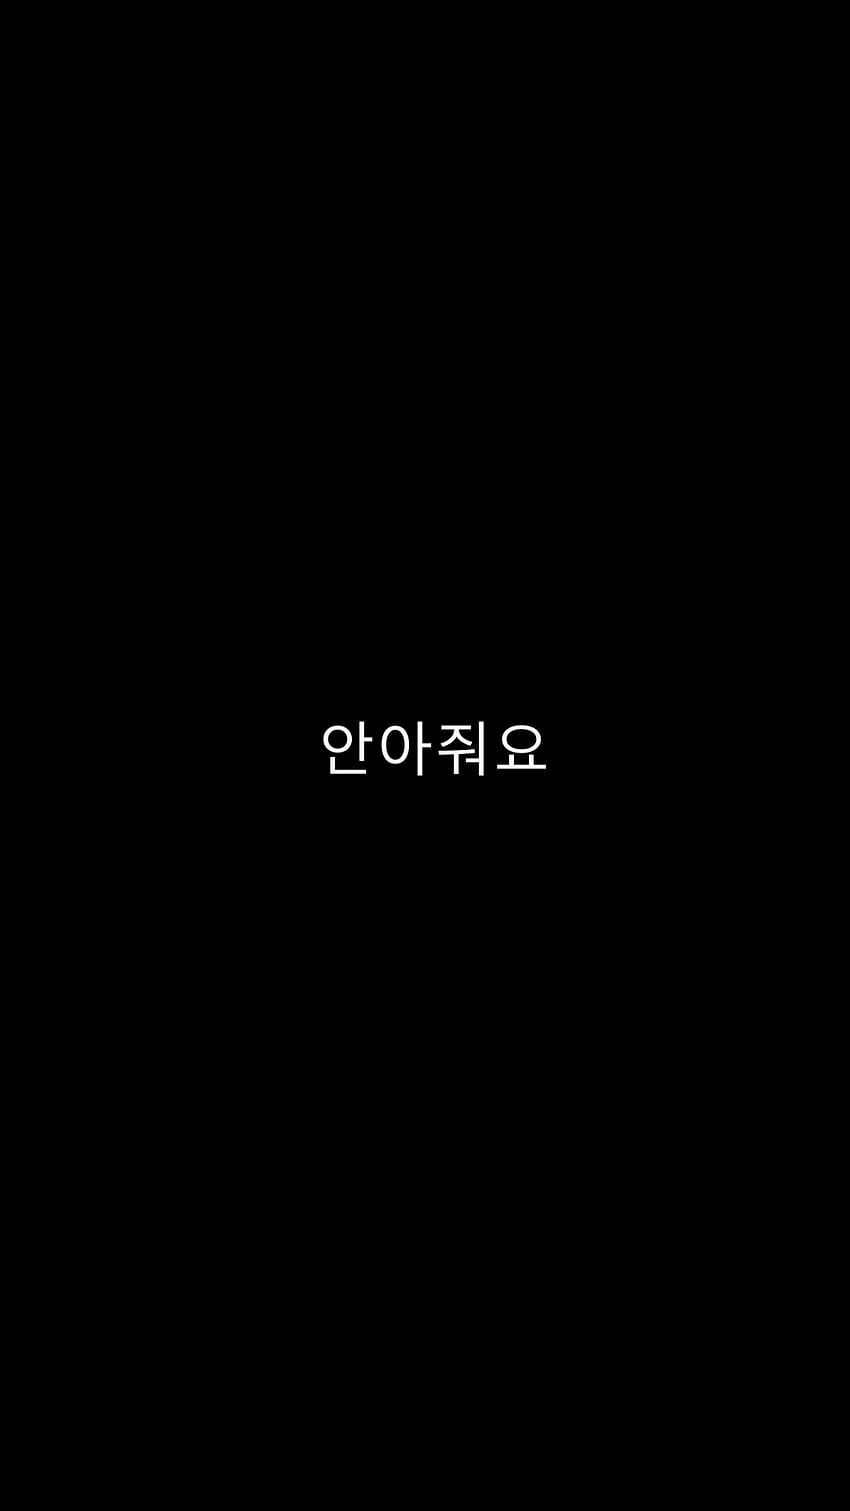 metalan. KARD；Ekran blokady tekstu；(HUG ME). Koreańskie cytaty, cytat estetyczny, koreańskie słowa, fajny koreański Tapeta na telefon HD